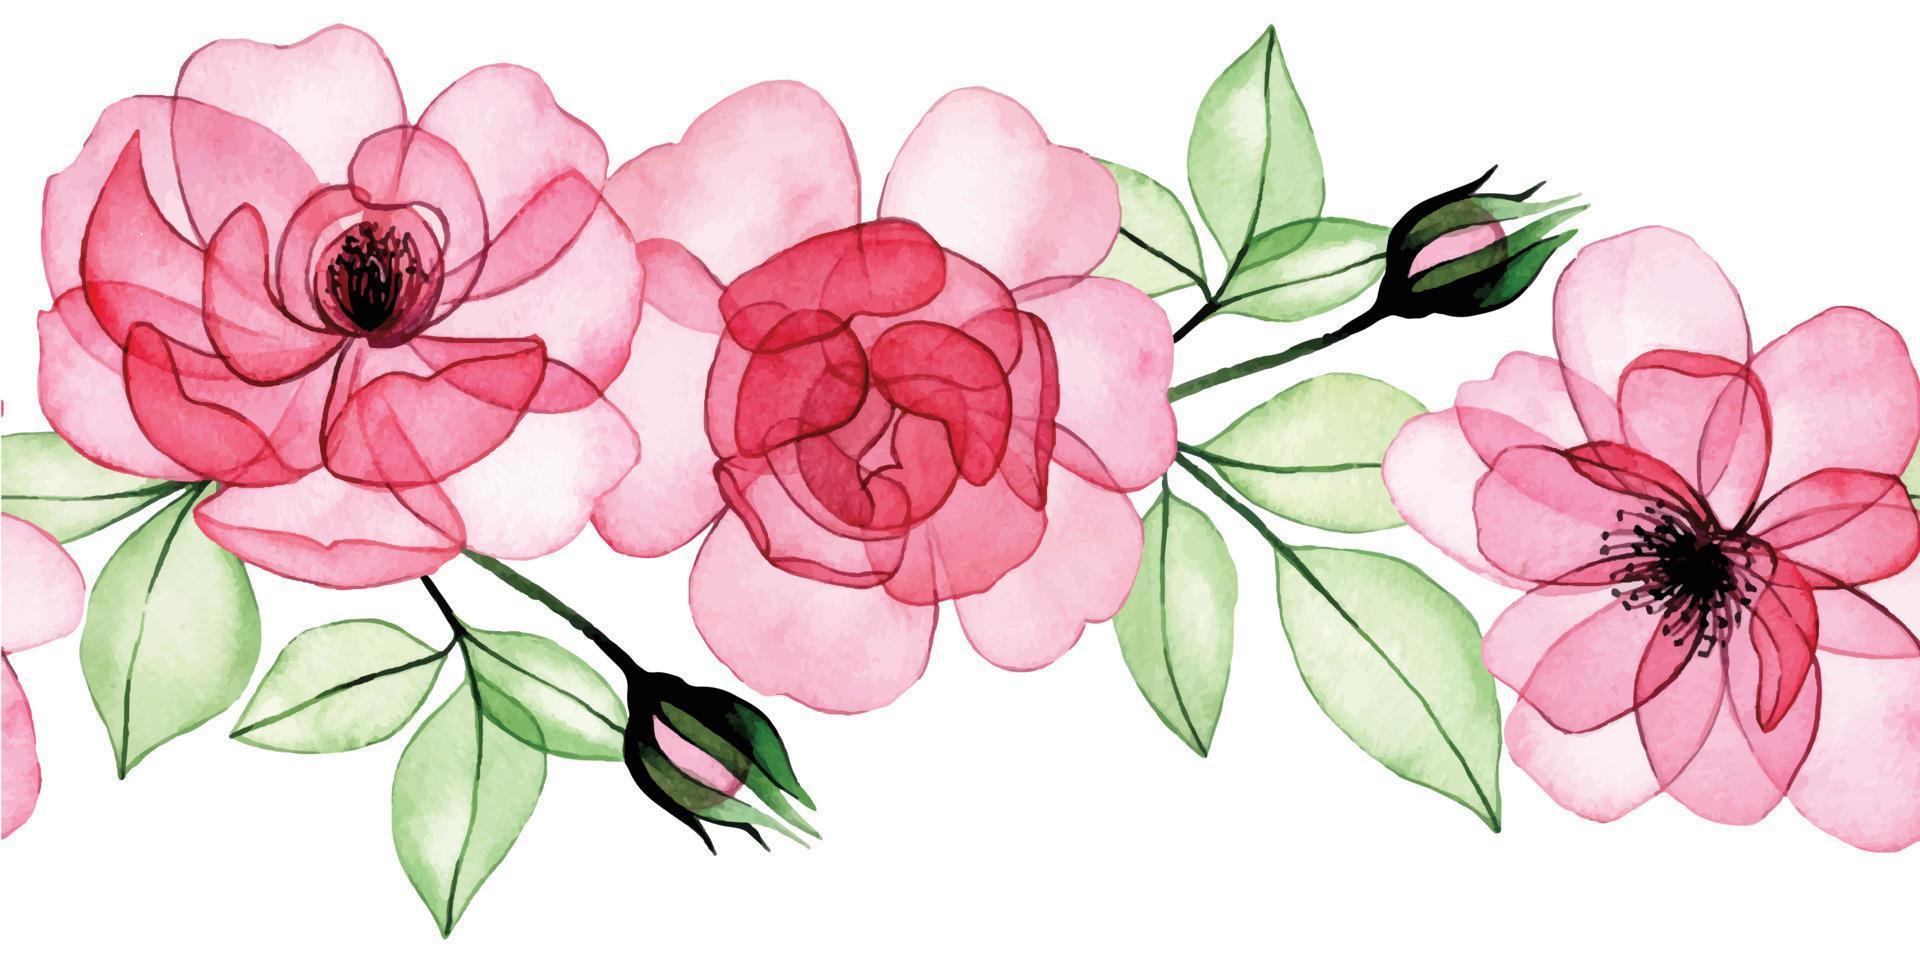 waterverf tekening. naadloos grens, transparant bloemen kader, roze rozen, bloemknoppen en bladeren. röntgenstraal vector